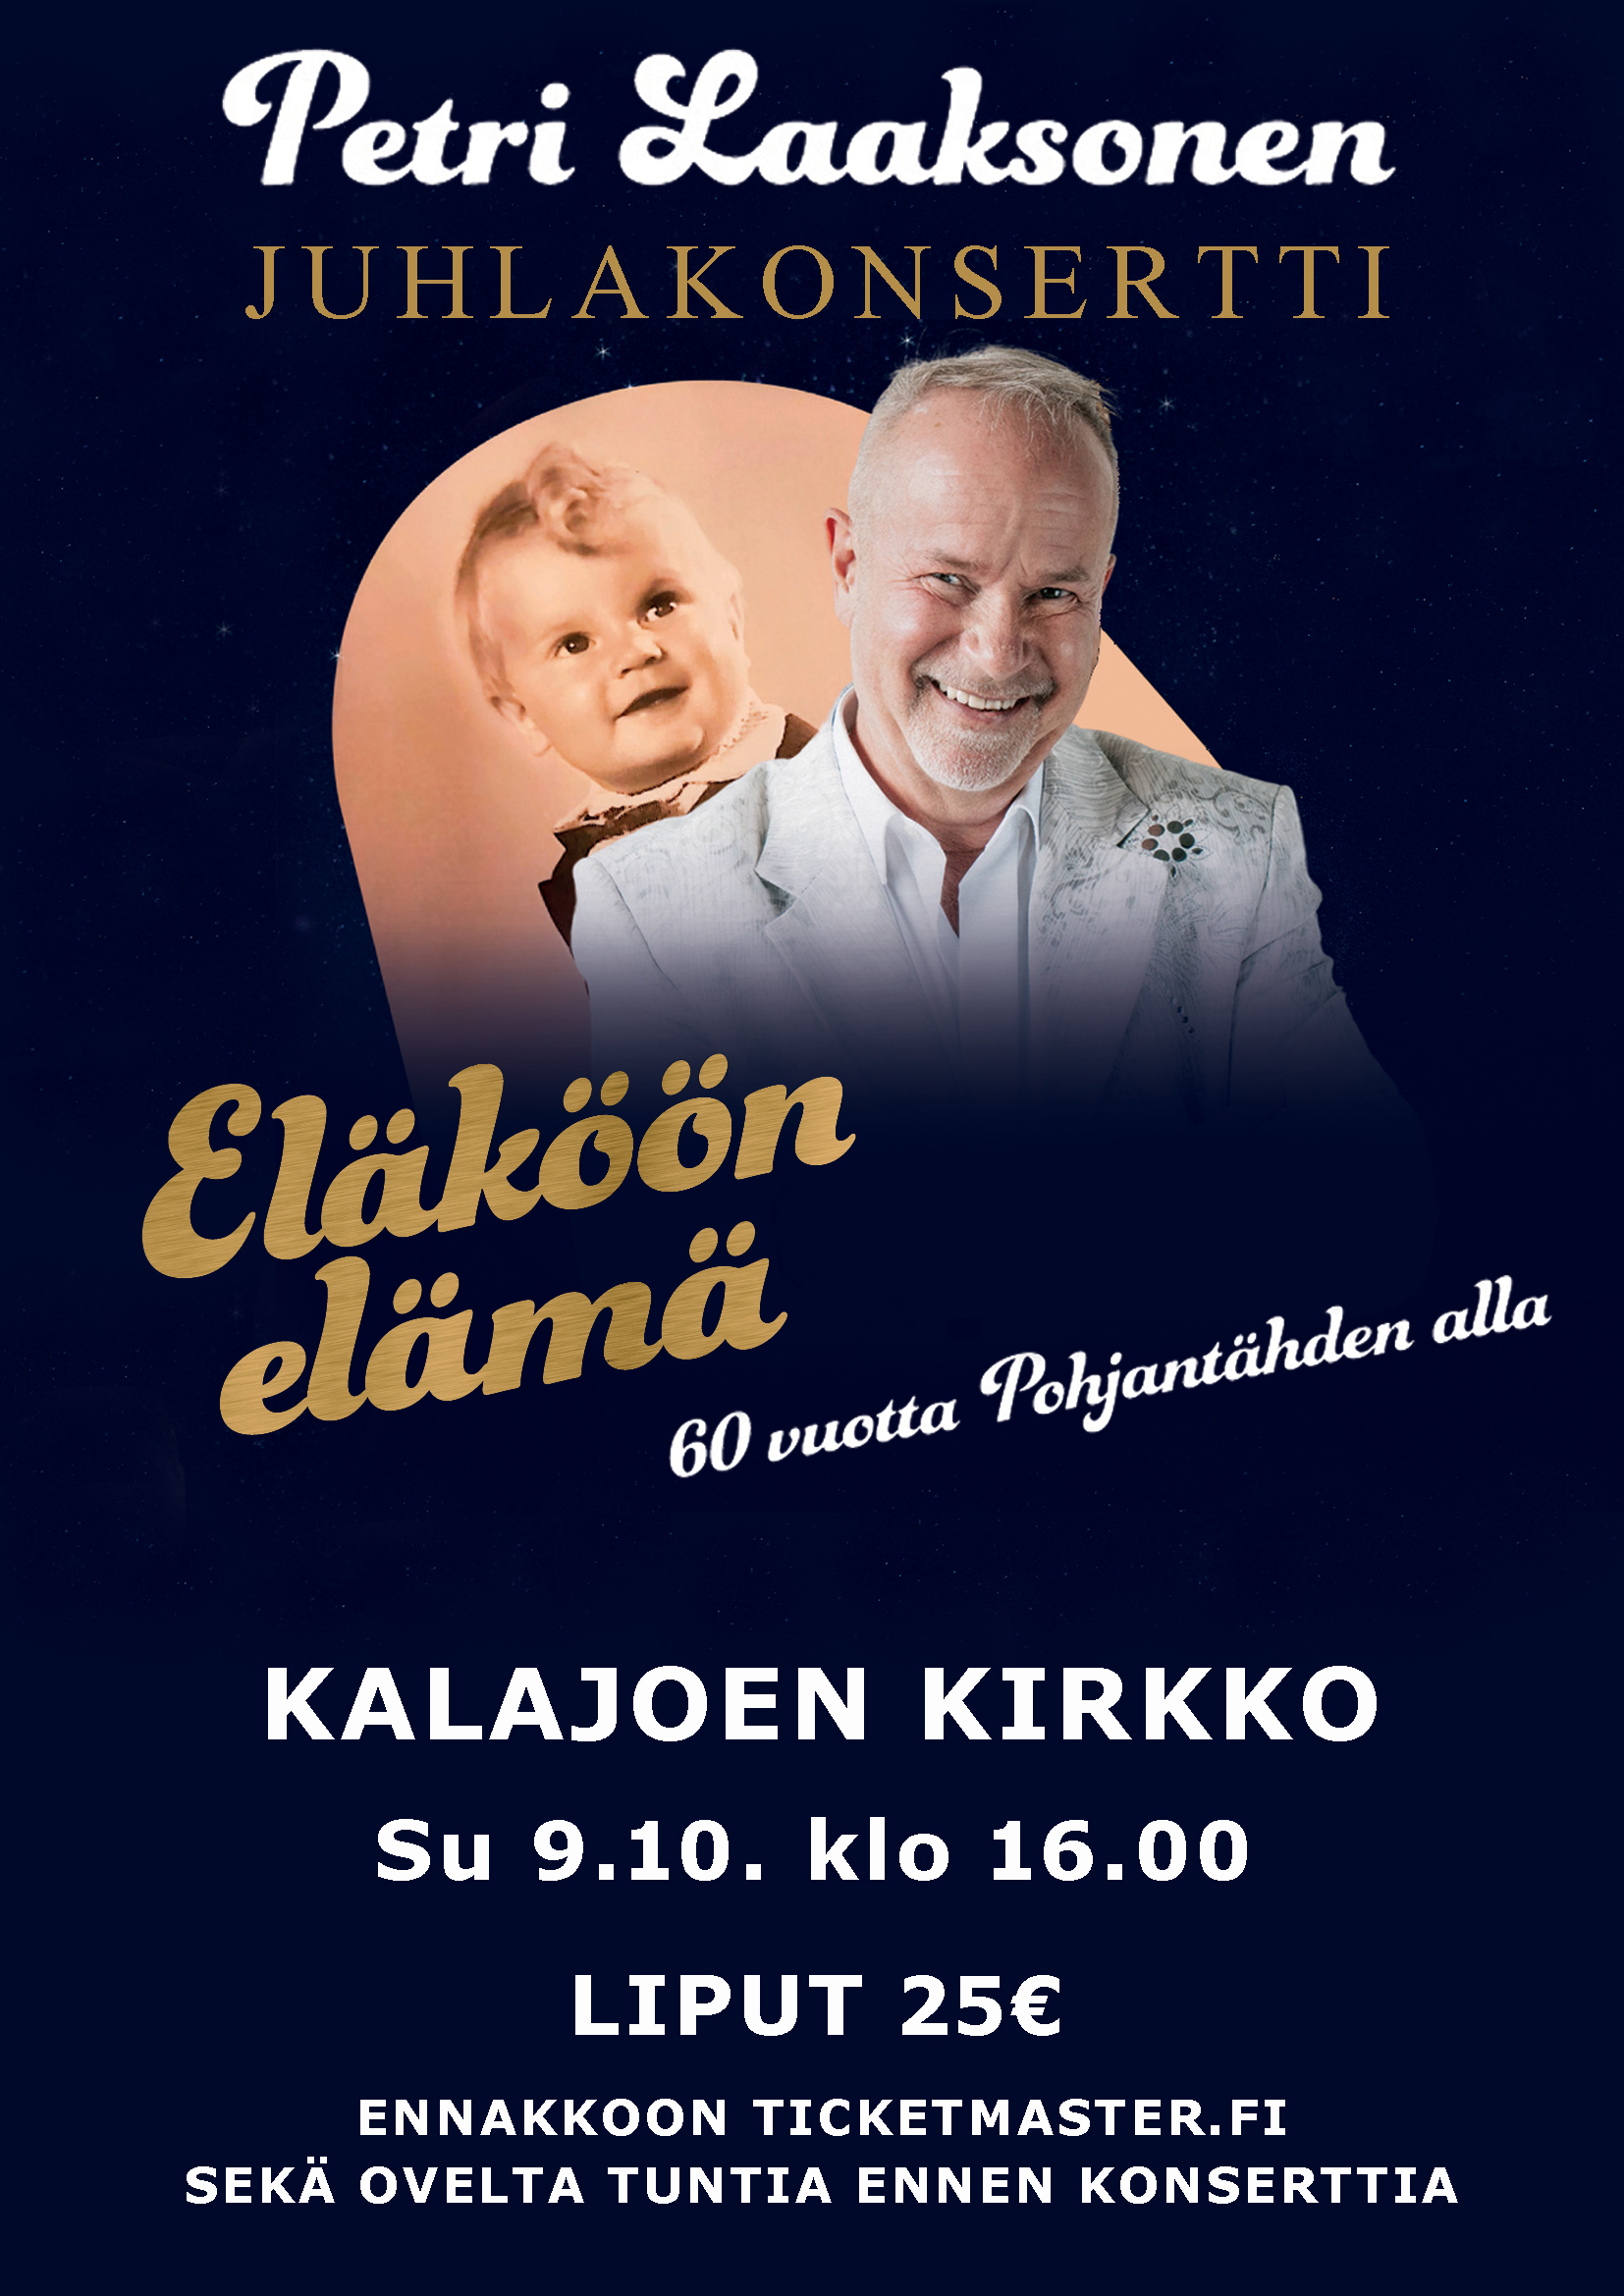 Eläköön elämä - 60 vuotta Pohjantähden alla -konsertti Kalajoen kirkossa 9.10. klo 16